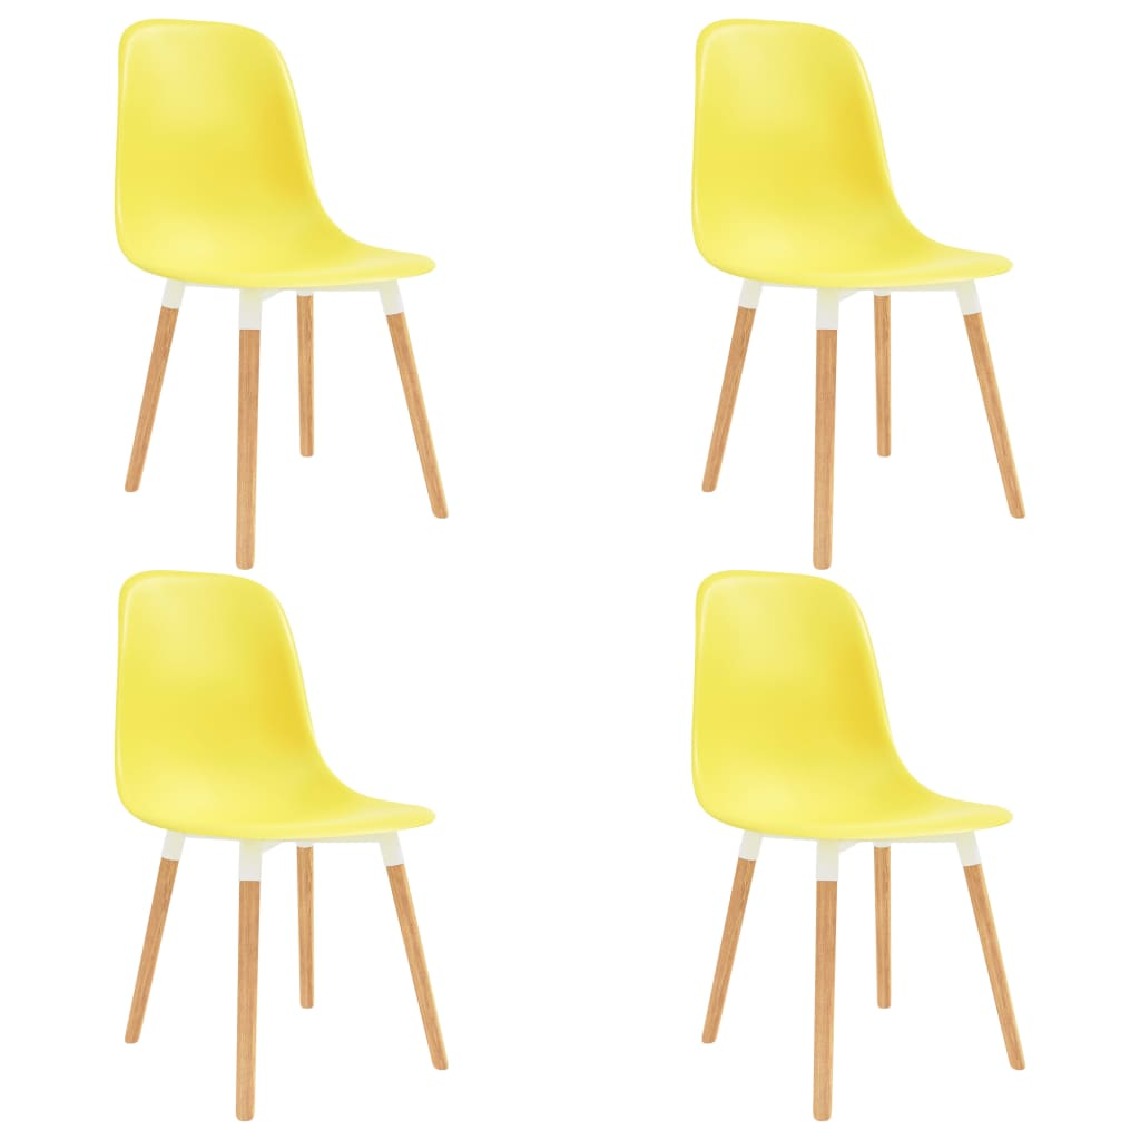 Chunhelife - Chunhelife Chaises de salle à manger 4 pcs Jaune Plastique - Chaises